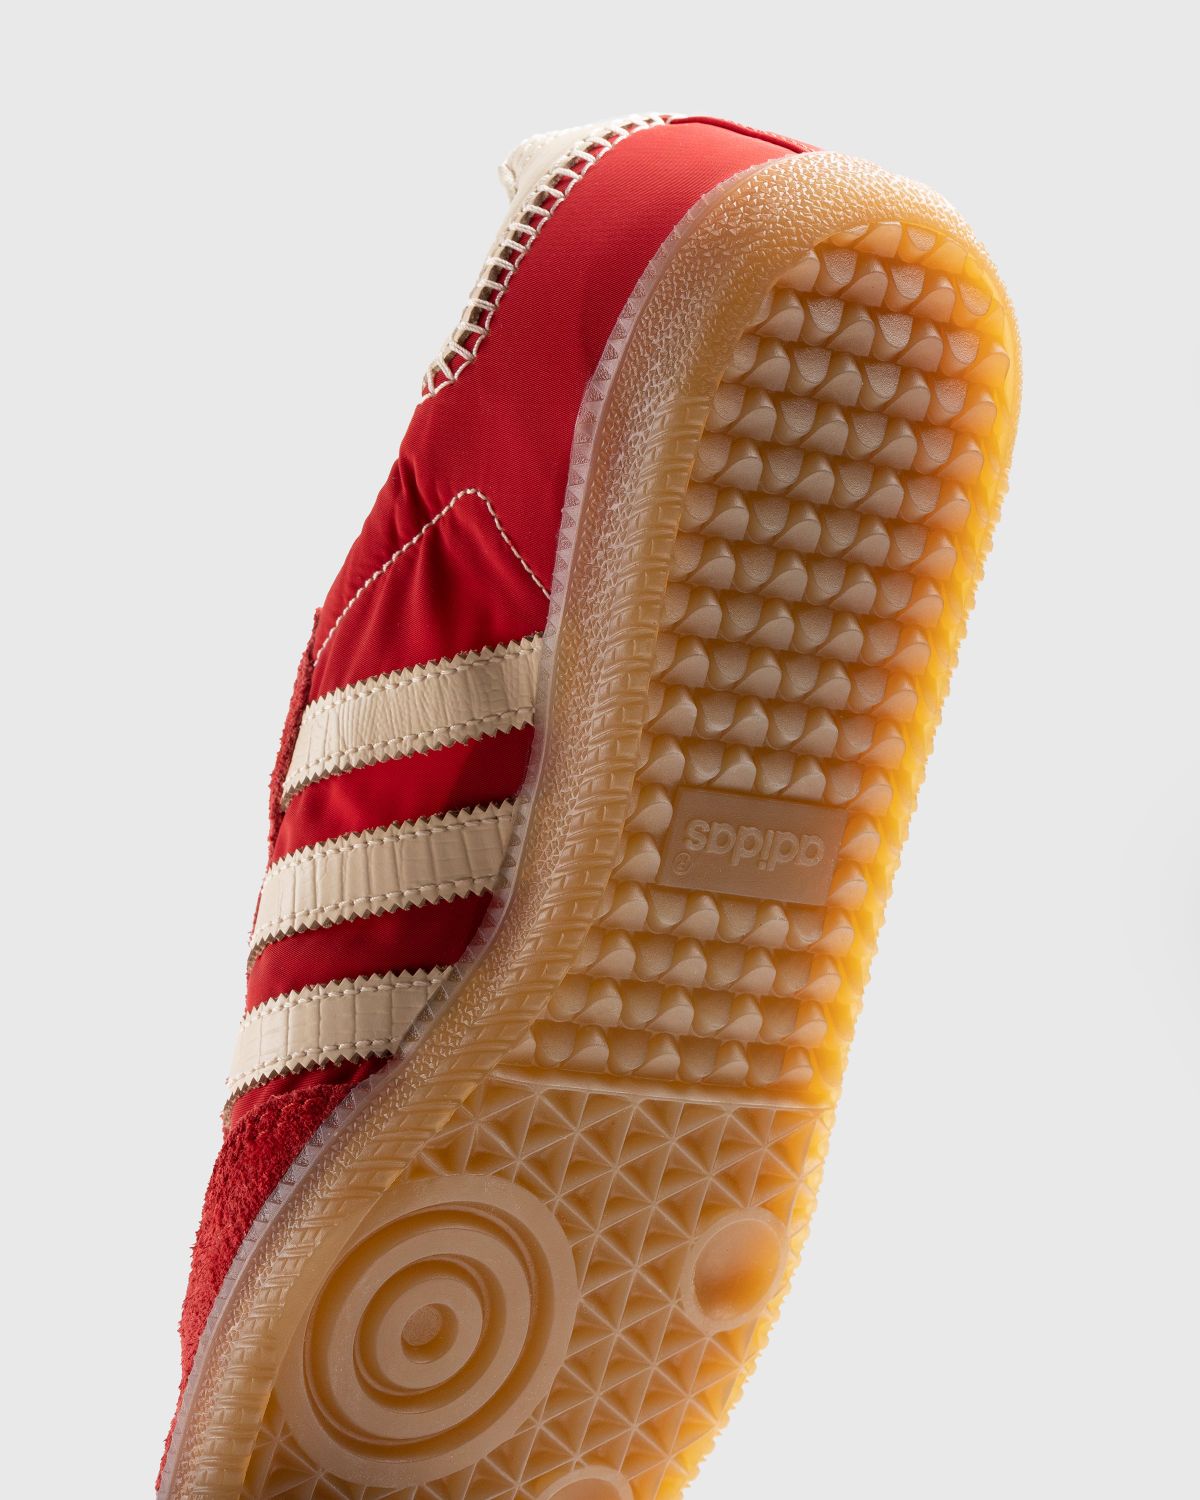 Adidas x Wales Bonner – WB Samba Scarlet/Ecru Tint/Scarlet - Sneakers - Red - Image 6